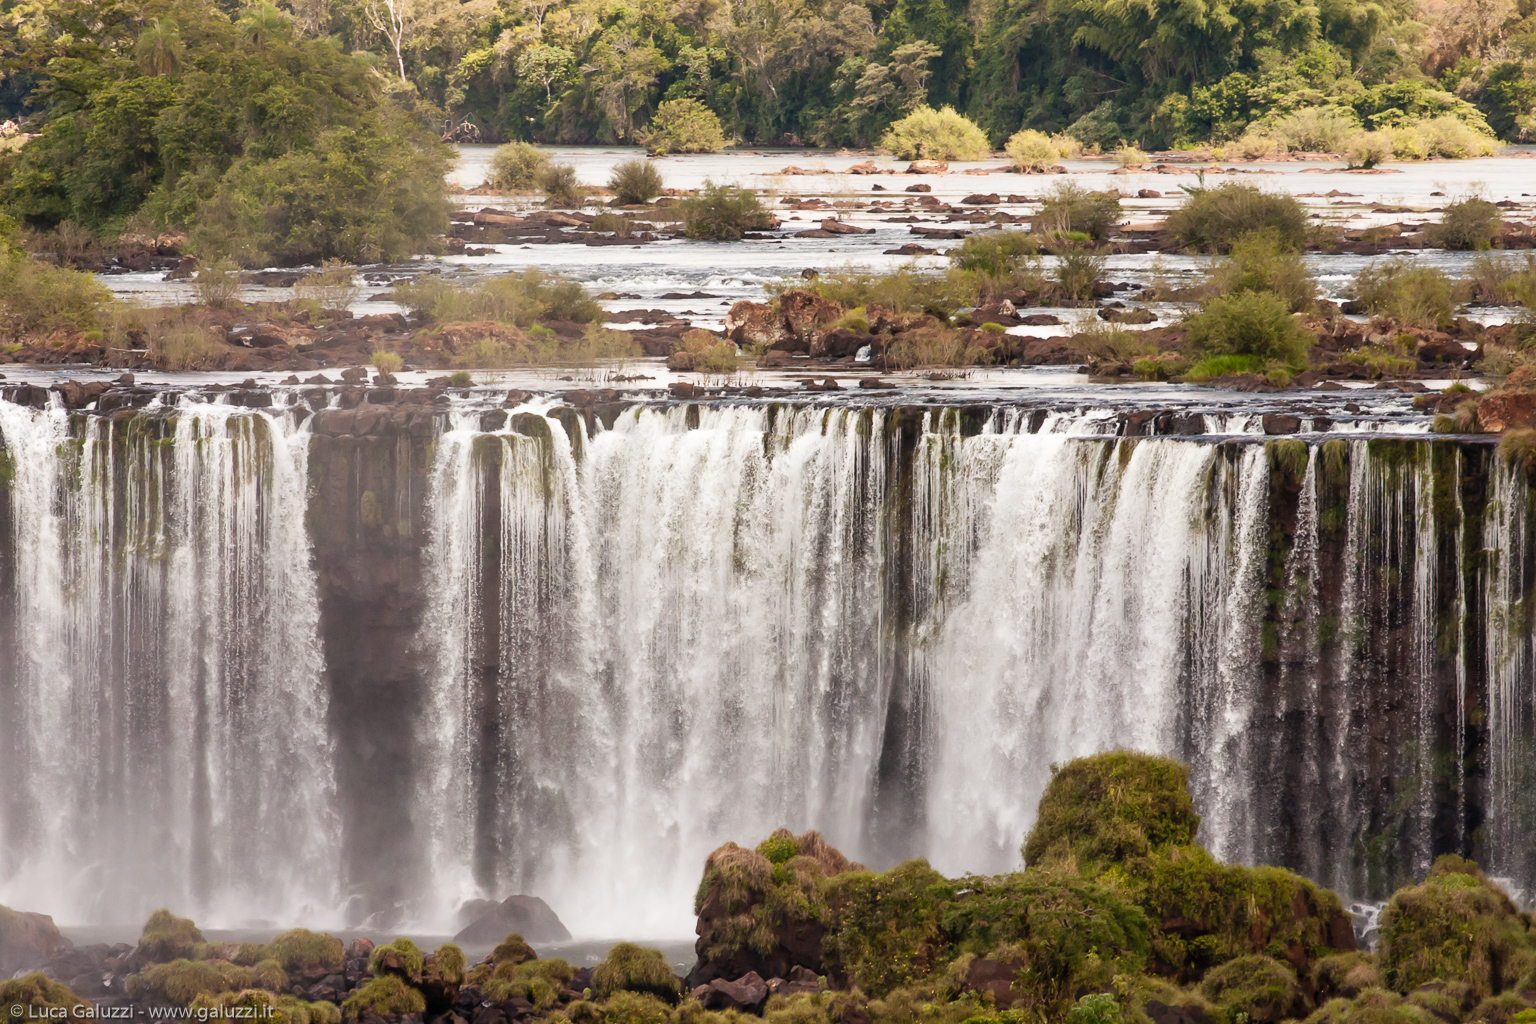 Brasile, las Cataratas del Iguazù viste dal lado brasileiro. In portoghese: "Cataratas do Iguaçu", in spagnolo: "Cataratas del Iguazú", in guaraní: "Chororo Yguasu".